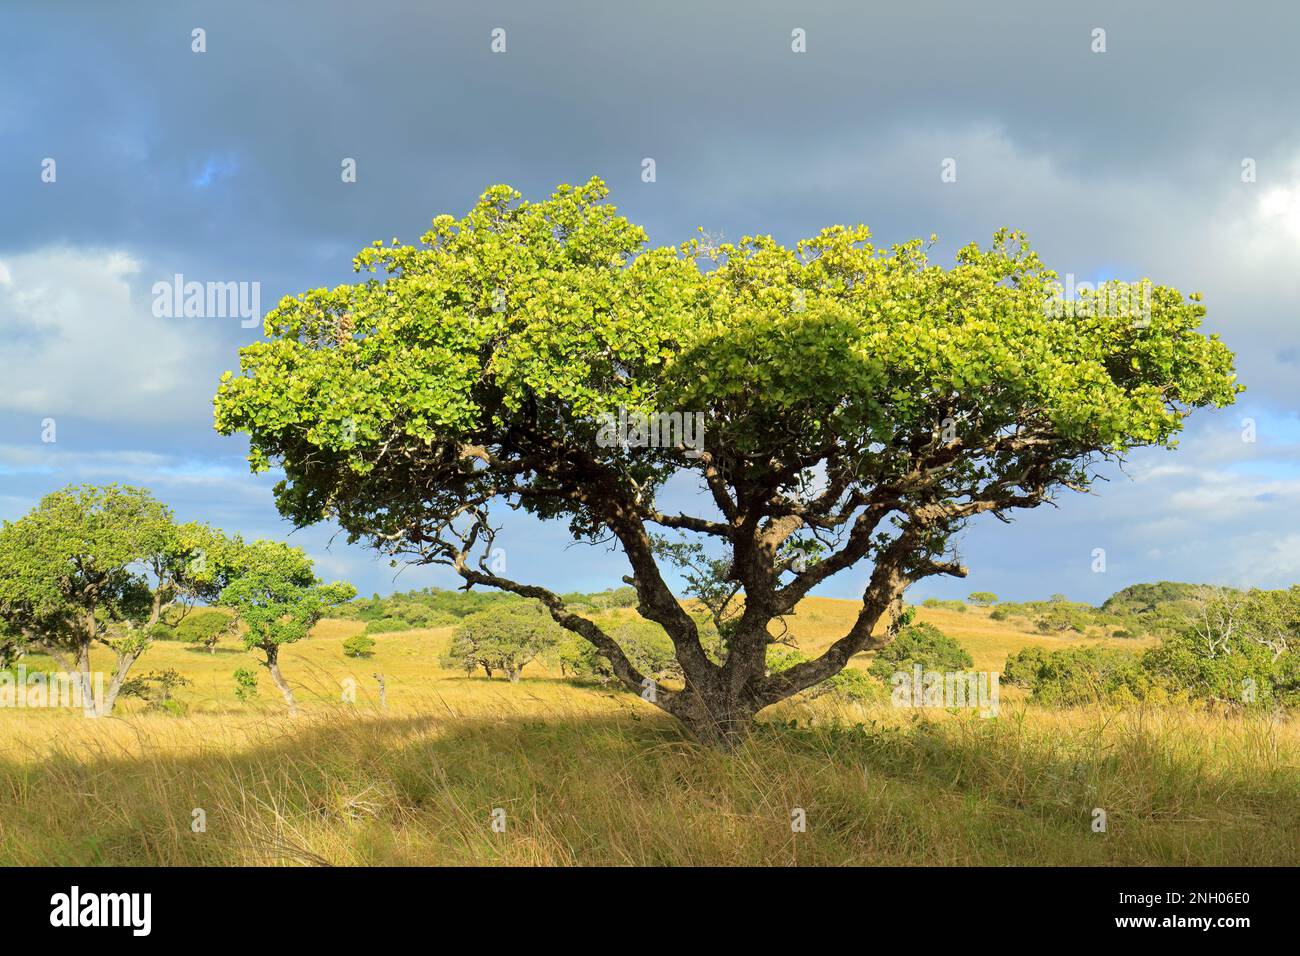 Savane Africaine paysage avec des arbres dans les Prairies avec un ciel nuageux, Afrique du Sud Banque D'Images